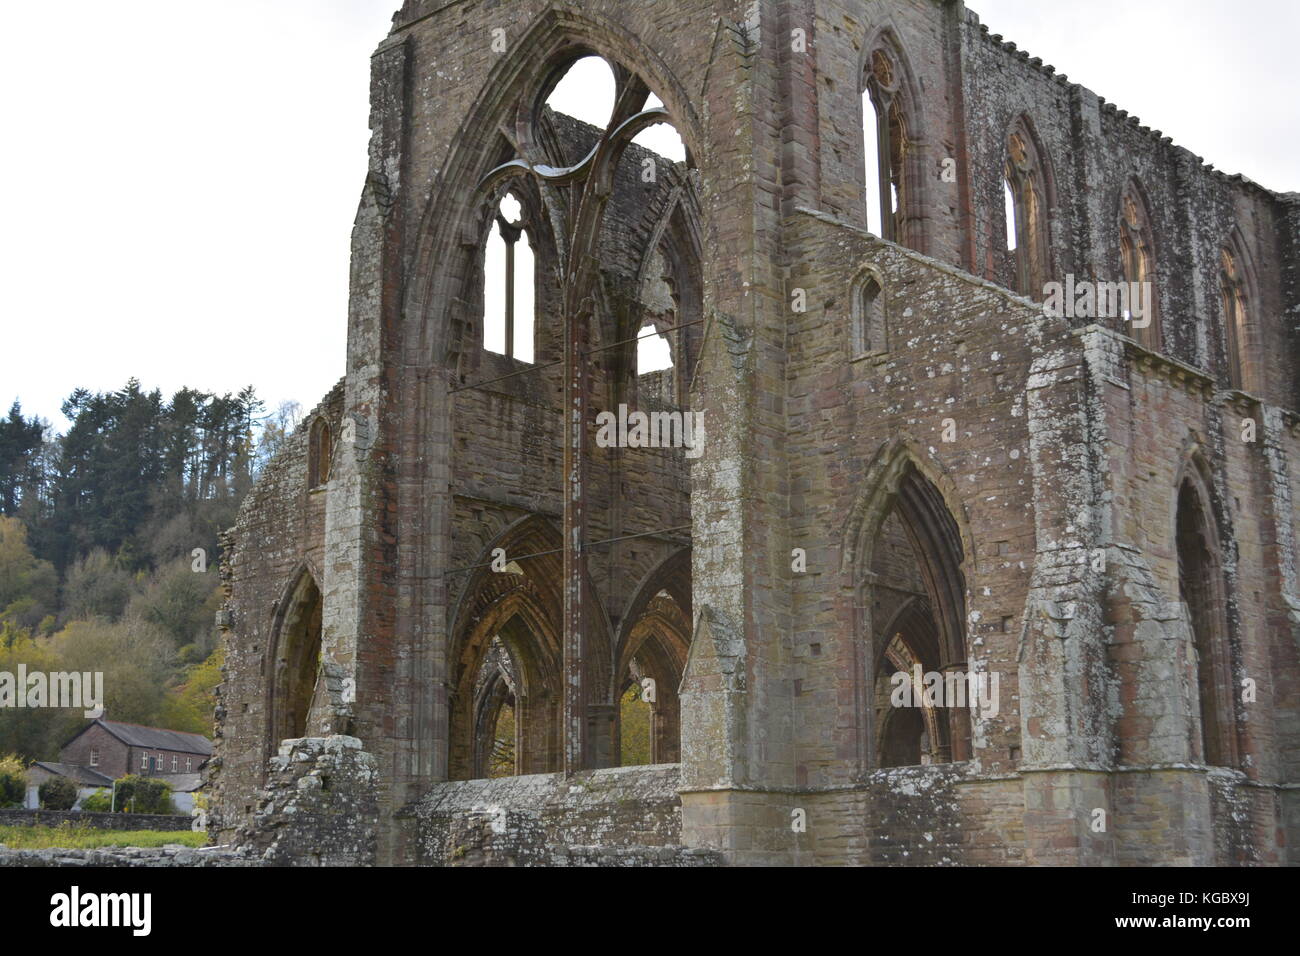 La ABADÍA DE TINTERN monmouthshire uk wales re monasterios disolución detalle arquitectónico ruinas antiguas Foto de stock